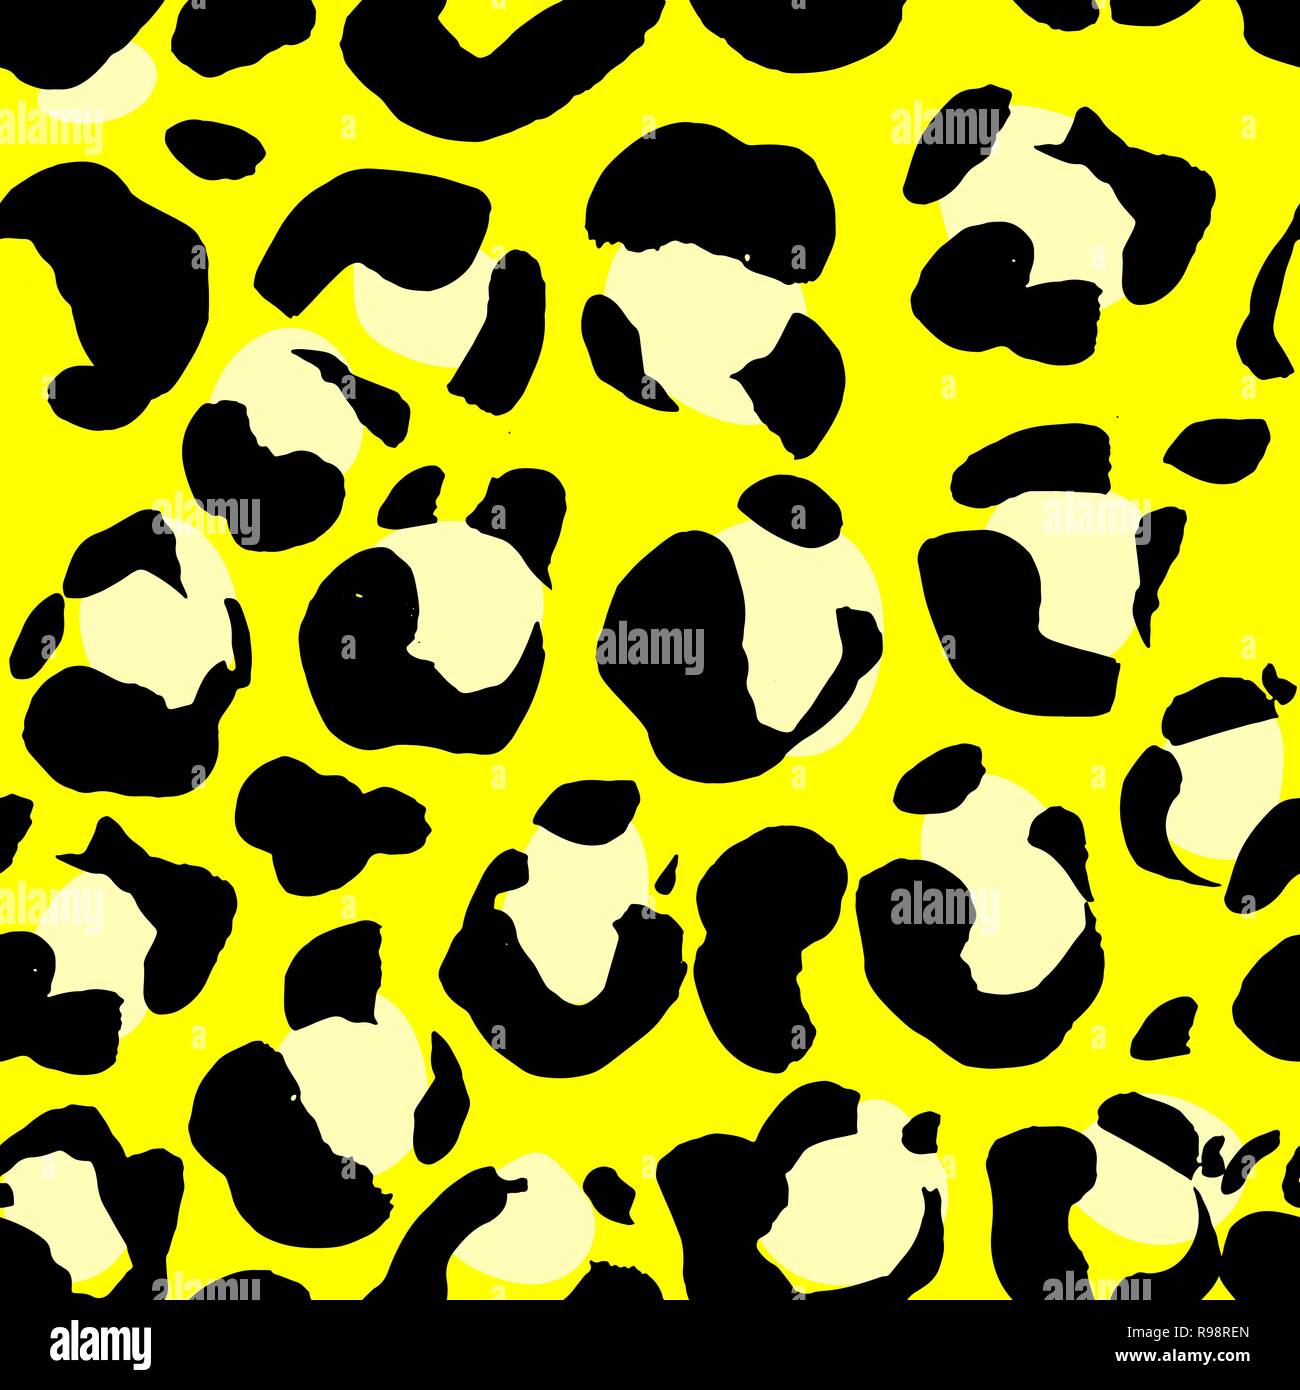 Leopardenmuster. Die nahtlose Vektor drucken. Realistische Tier Textur.  Schwarze und gelbe Flecken auf einem beigen Hintergrund. Abstrakte, sich  wiederholendes Muster - Leopard Stock-Vektorgrafik - Alamy